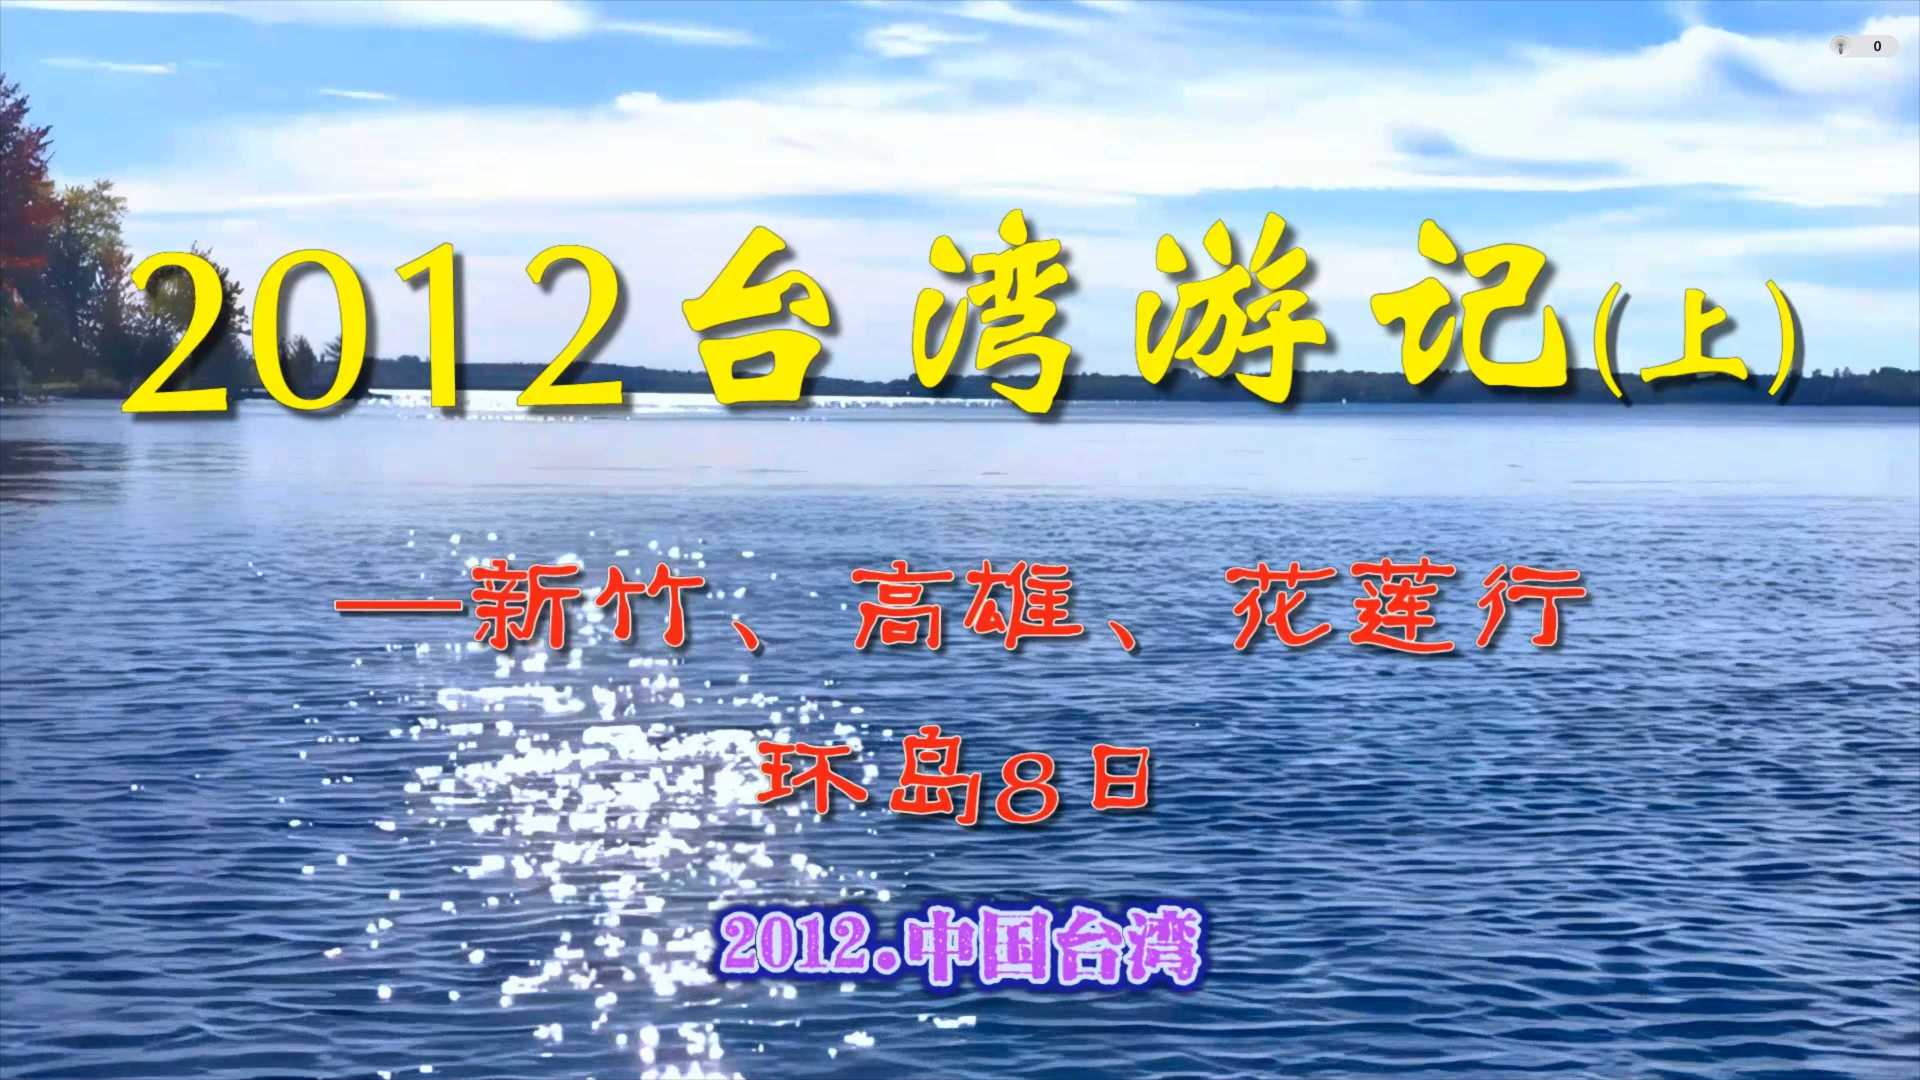 2012台湾游记(上)-新竹、高雄、花莲行